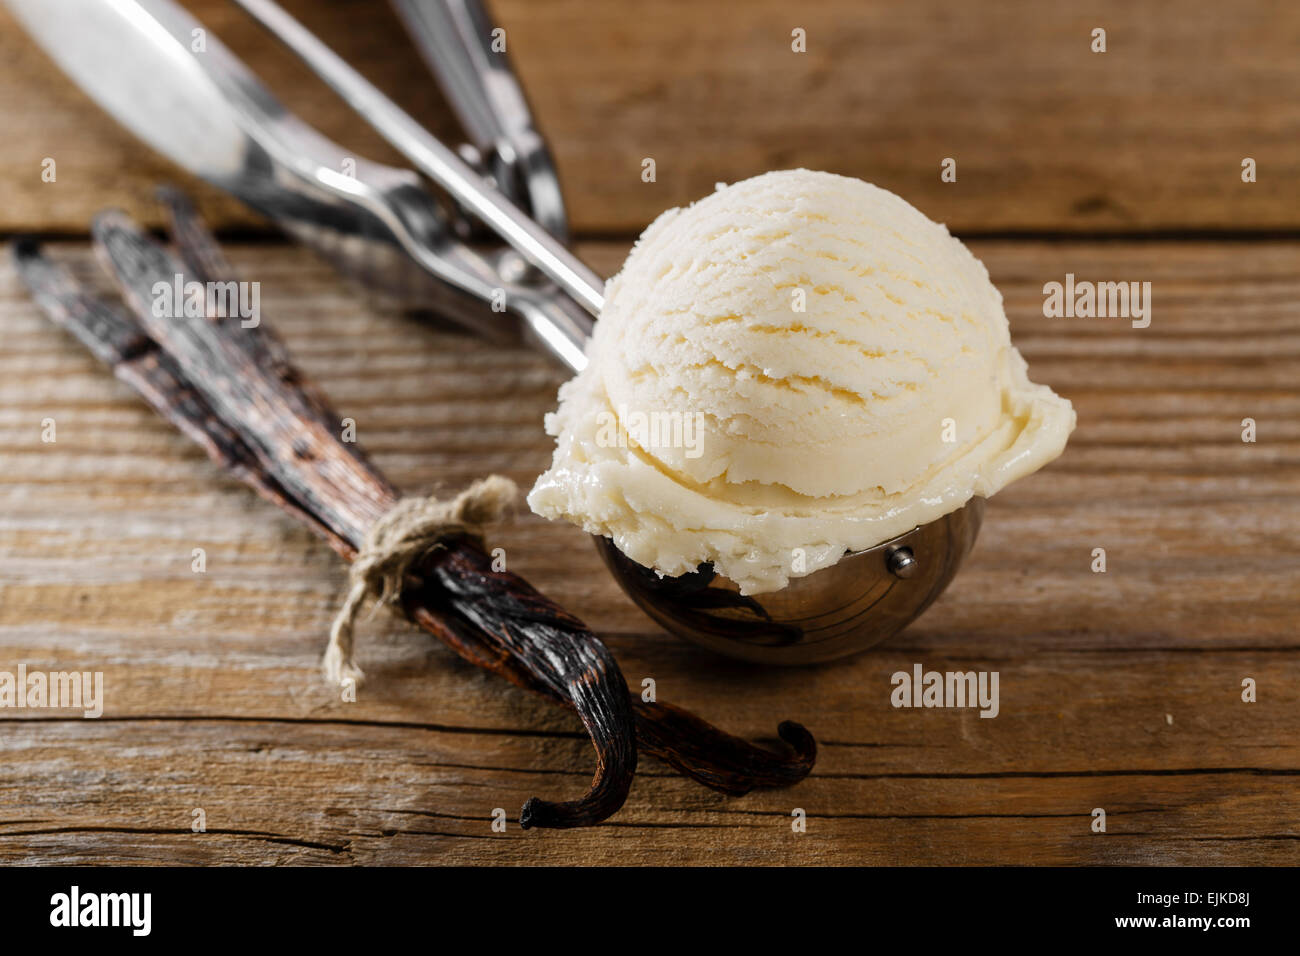 Bola de helado de vainilla con una cuchara scoop Foto de stock